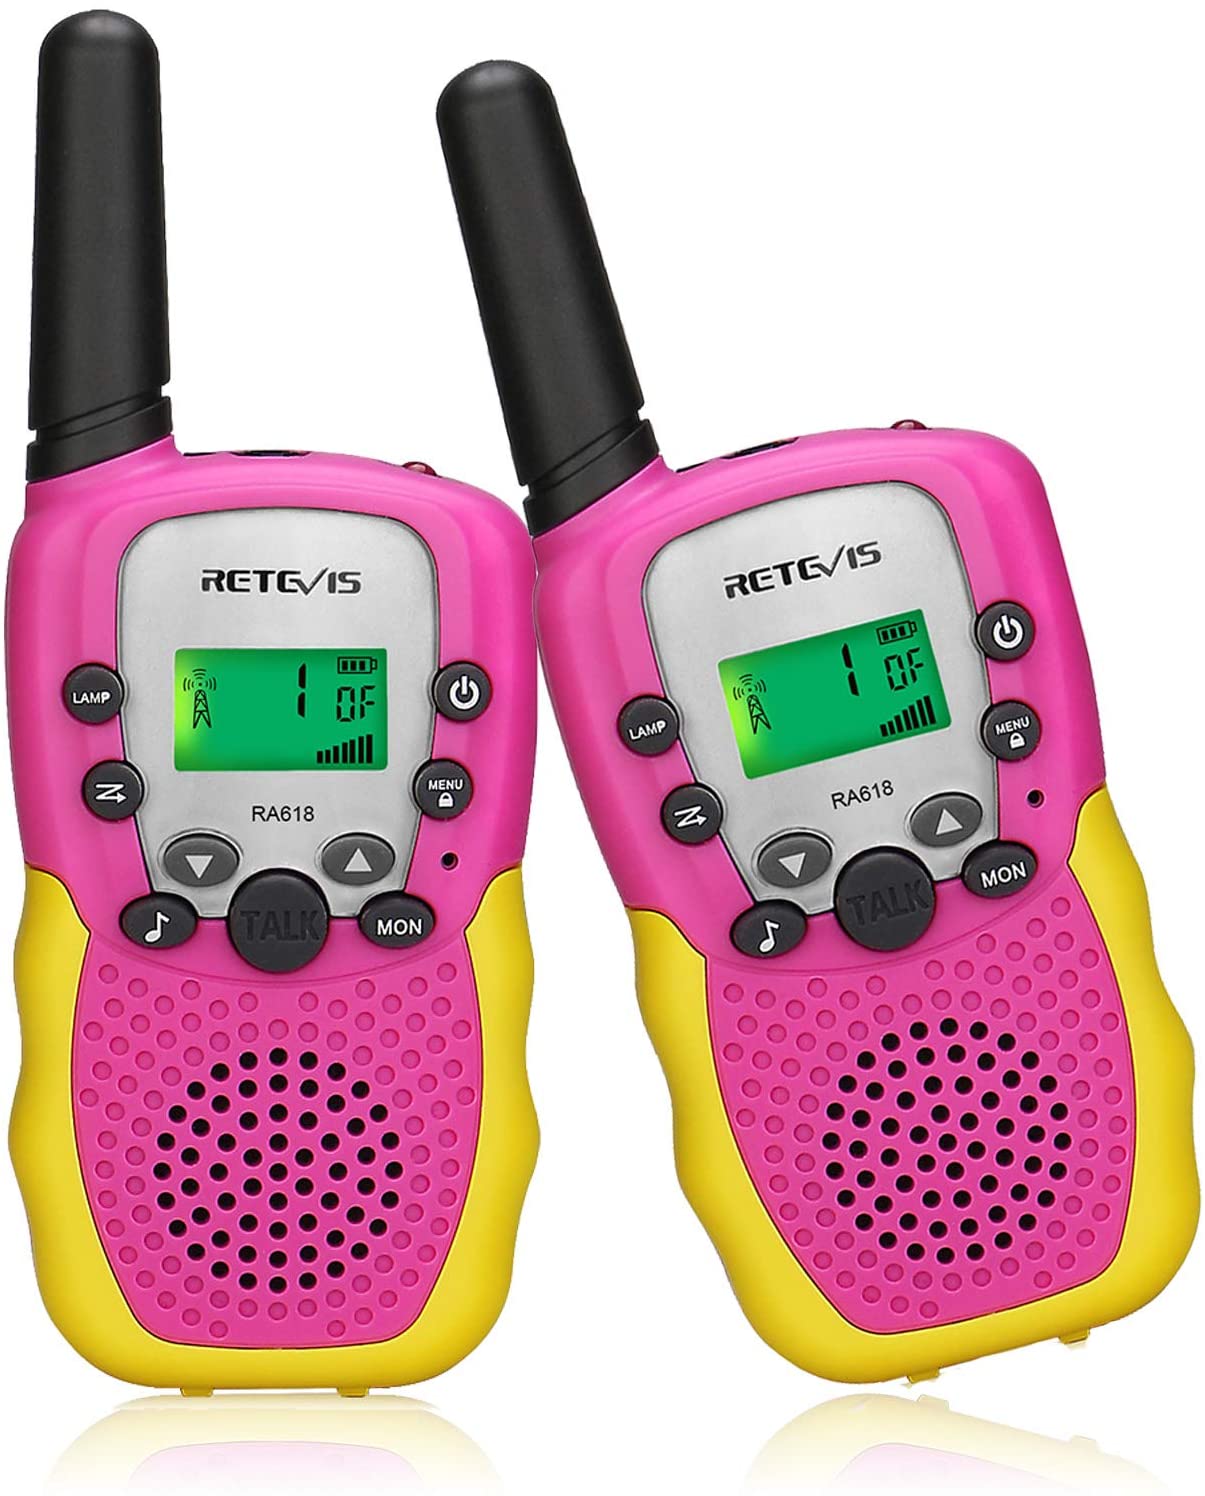 talkie walkie enfant 10 Canaux rose jaune au meilleur prix